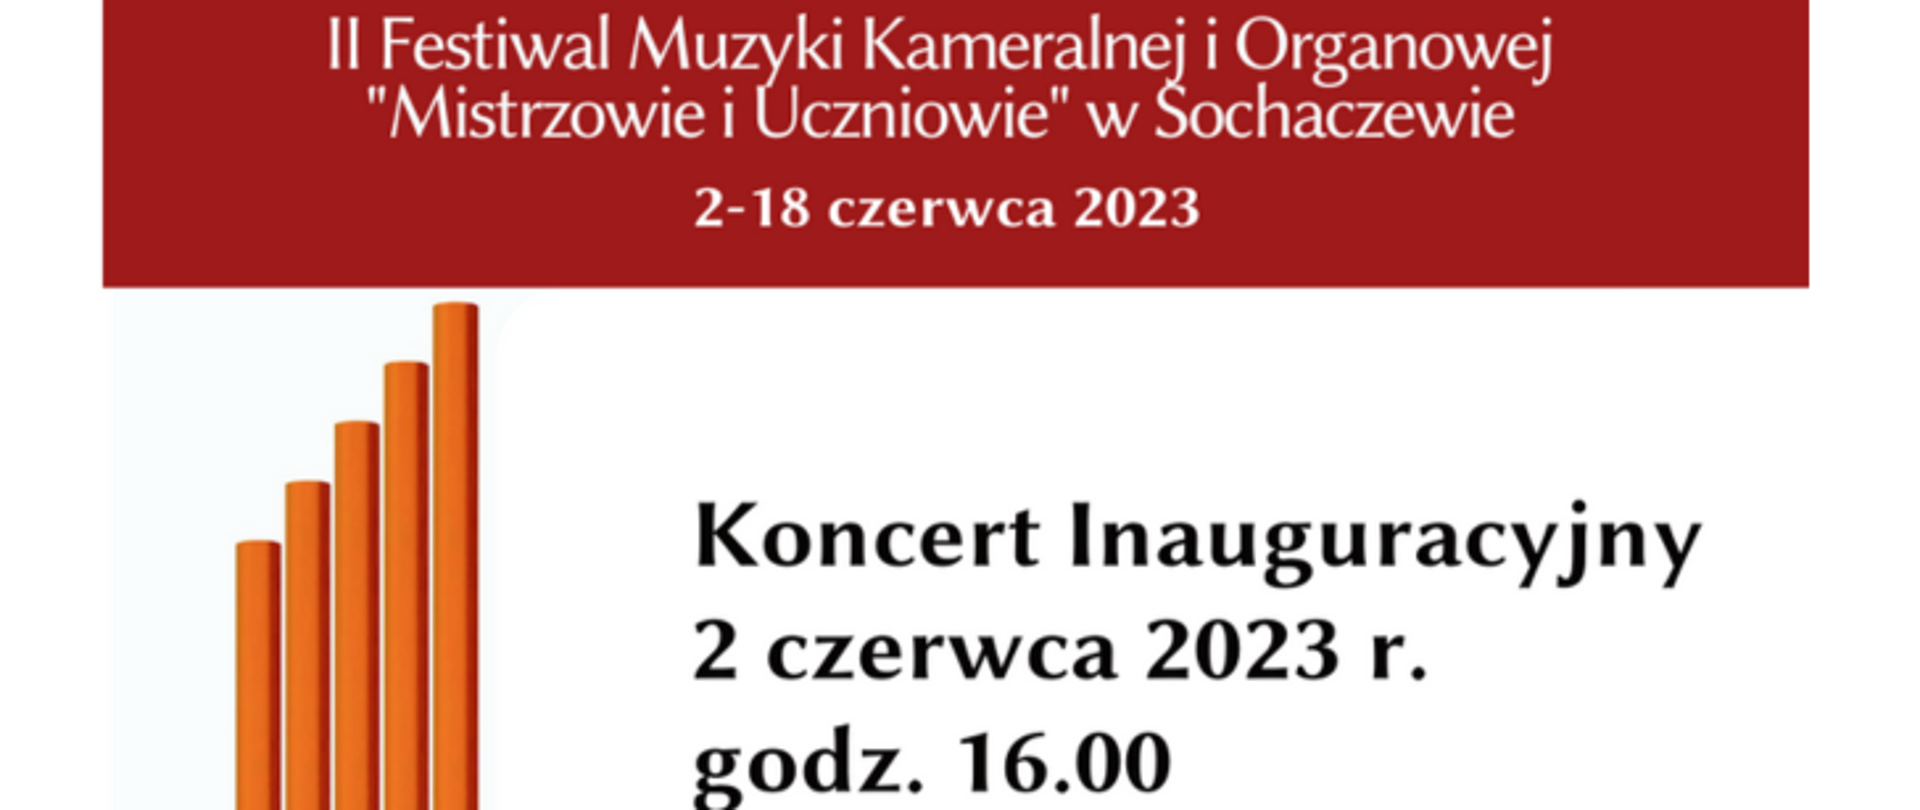 Informacja na czerwonym tle biały napis" II Festiwal Muzyki Kameralnej i Organowej "Mistrzowie i Uczniowie" w Sochaczewie, 2-18 czerwca 2023 r. Koncert Inauguracyjny 2 czerwca 2023 r. godz. 16.00